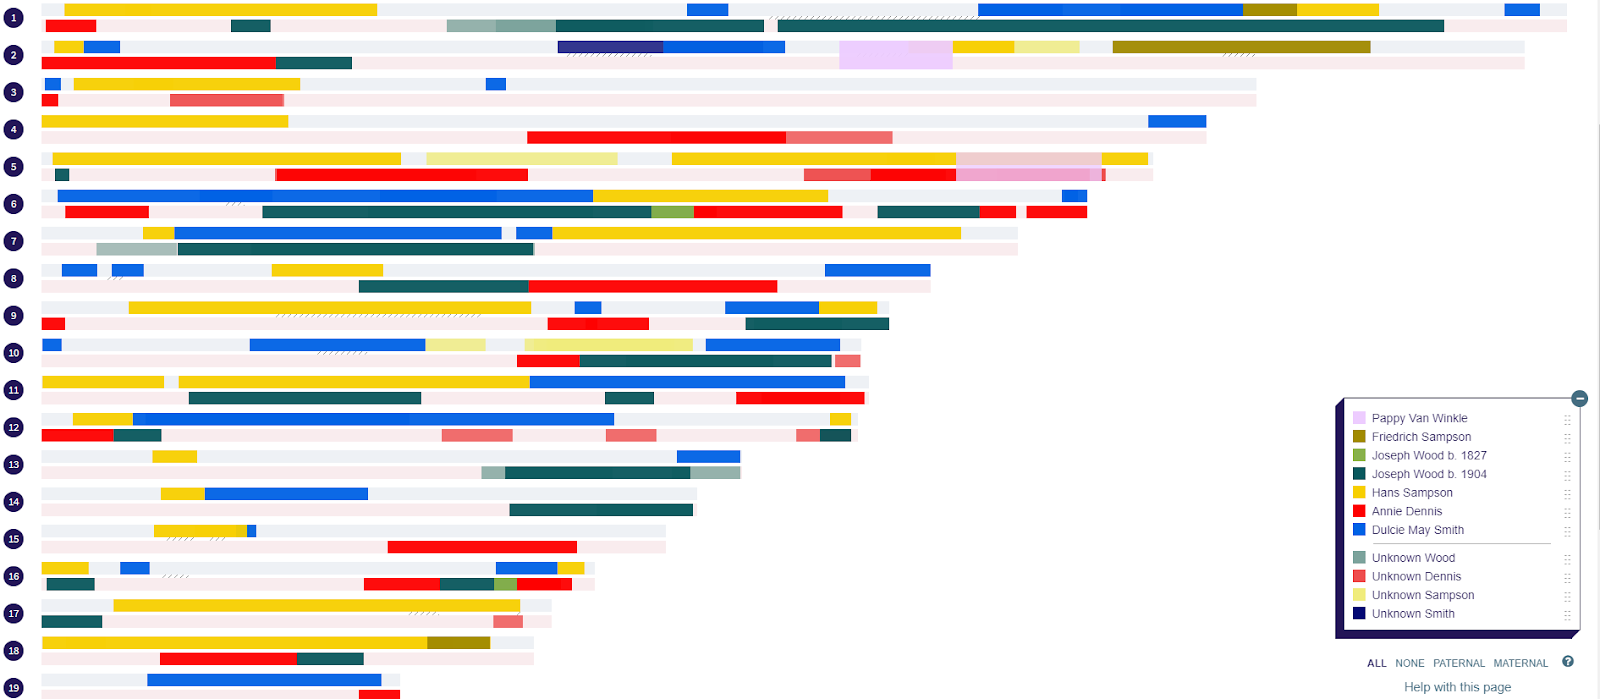 Segmentos coloridos no DNA Painter para 19 pares de cromossomas e uma lenda com chaves coloridas